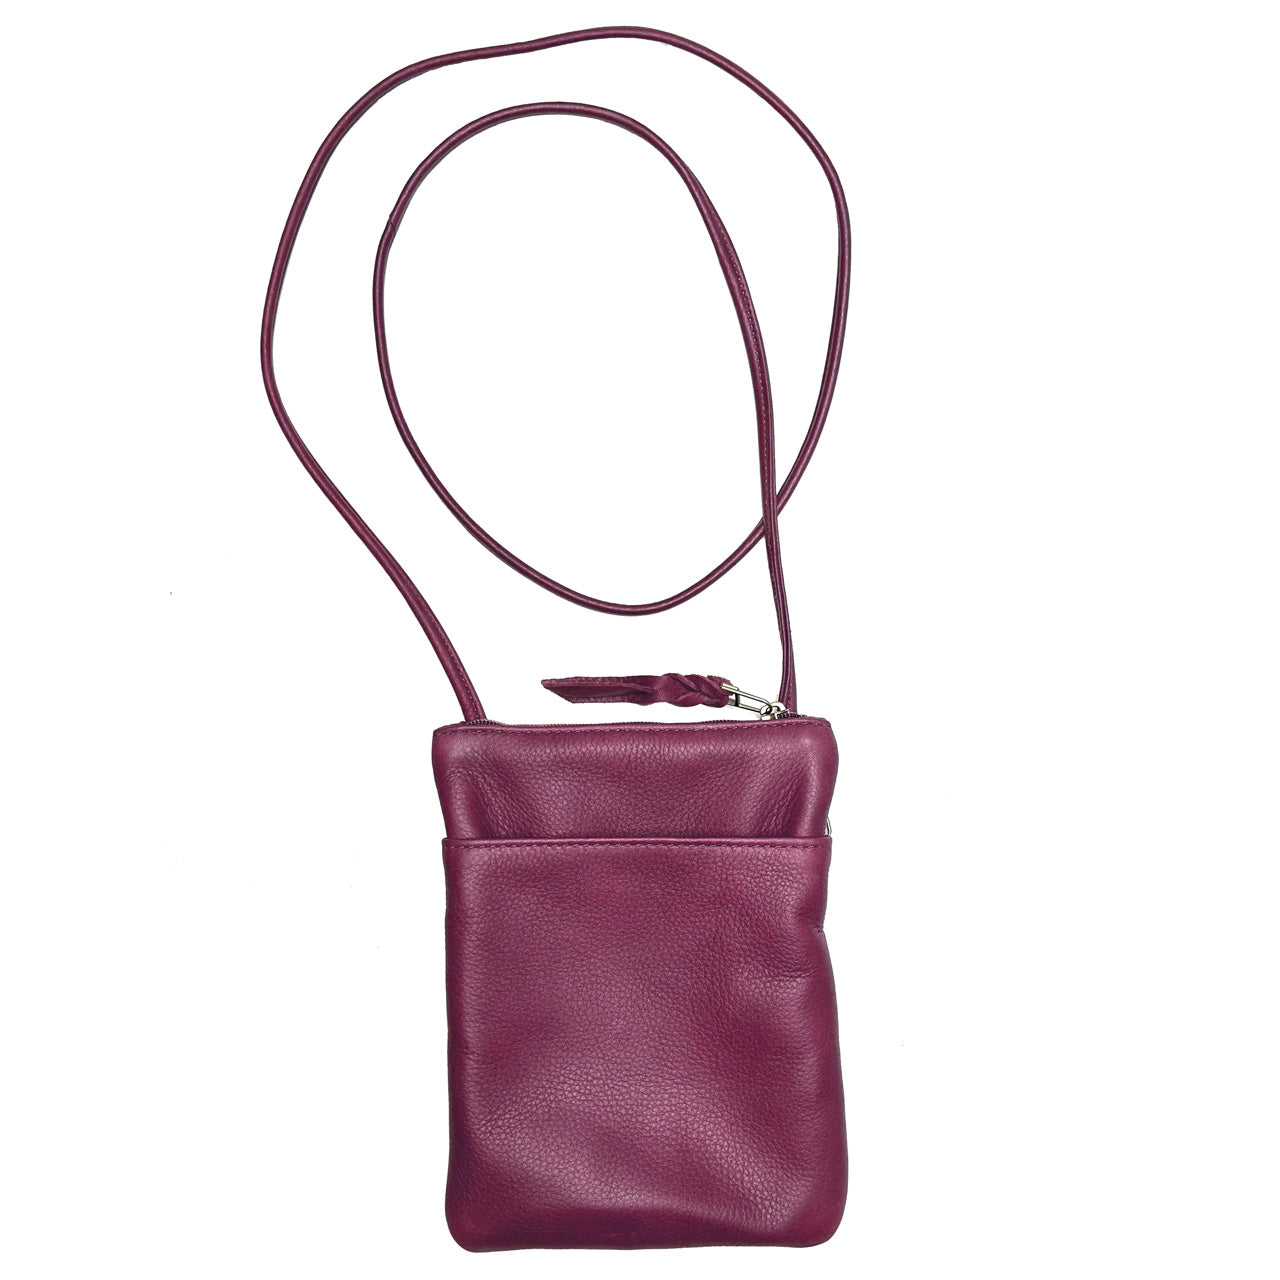 SVEN Style No. 022 Crossbody/Shoulder Bag burgundy leather